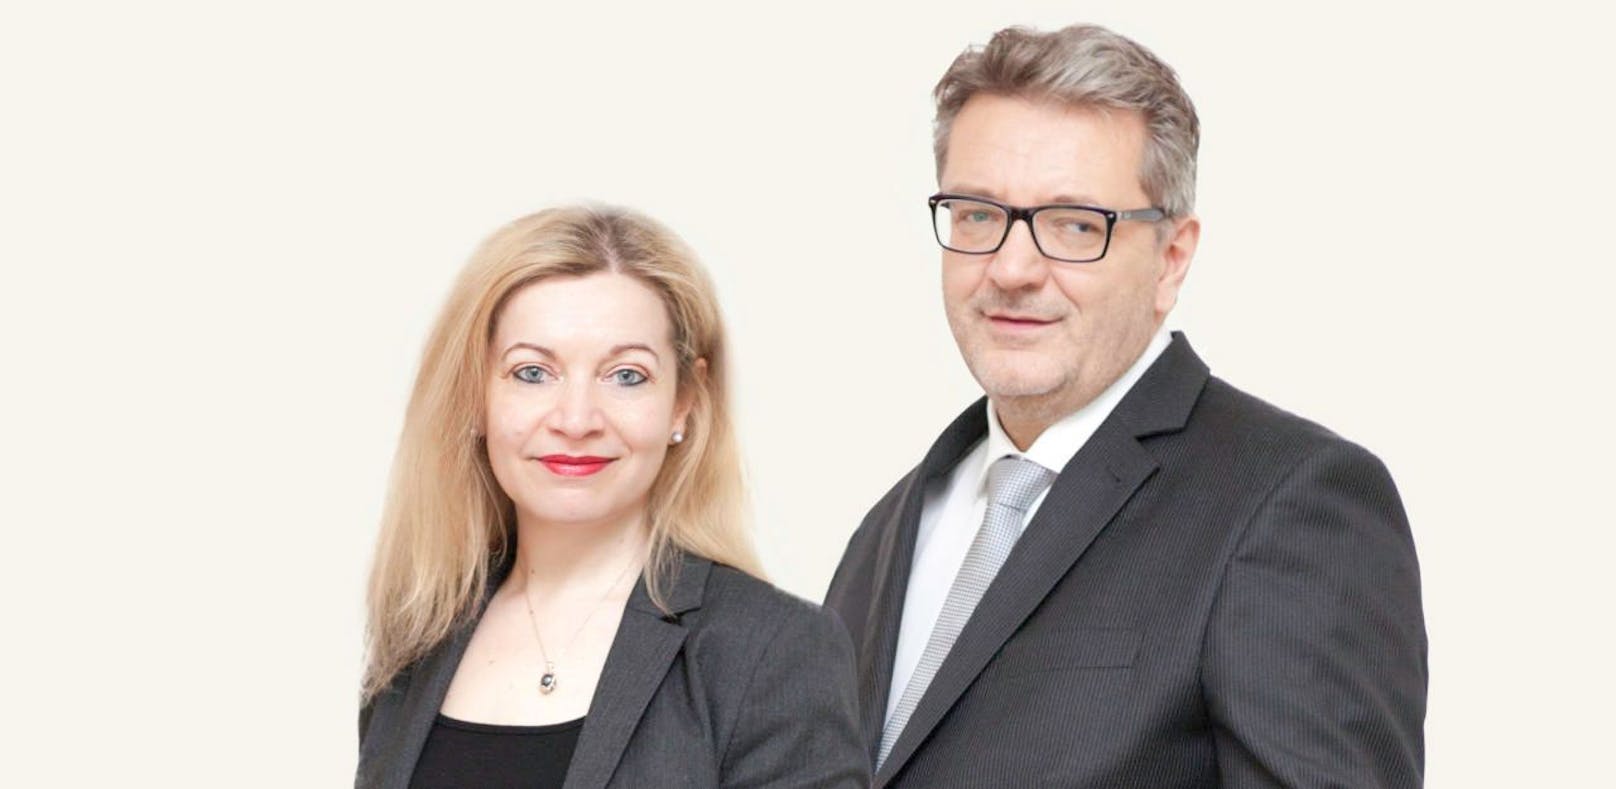 Die neue Fonds-Soziales-Wien-Chefin Anita Bauer mit Peter Hacker, dem künftigen Sozial- und Gesundheitsstadtrat.